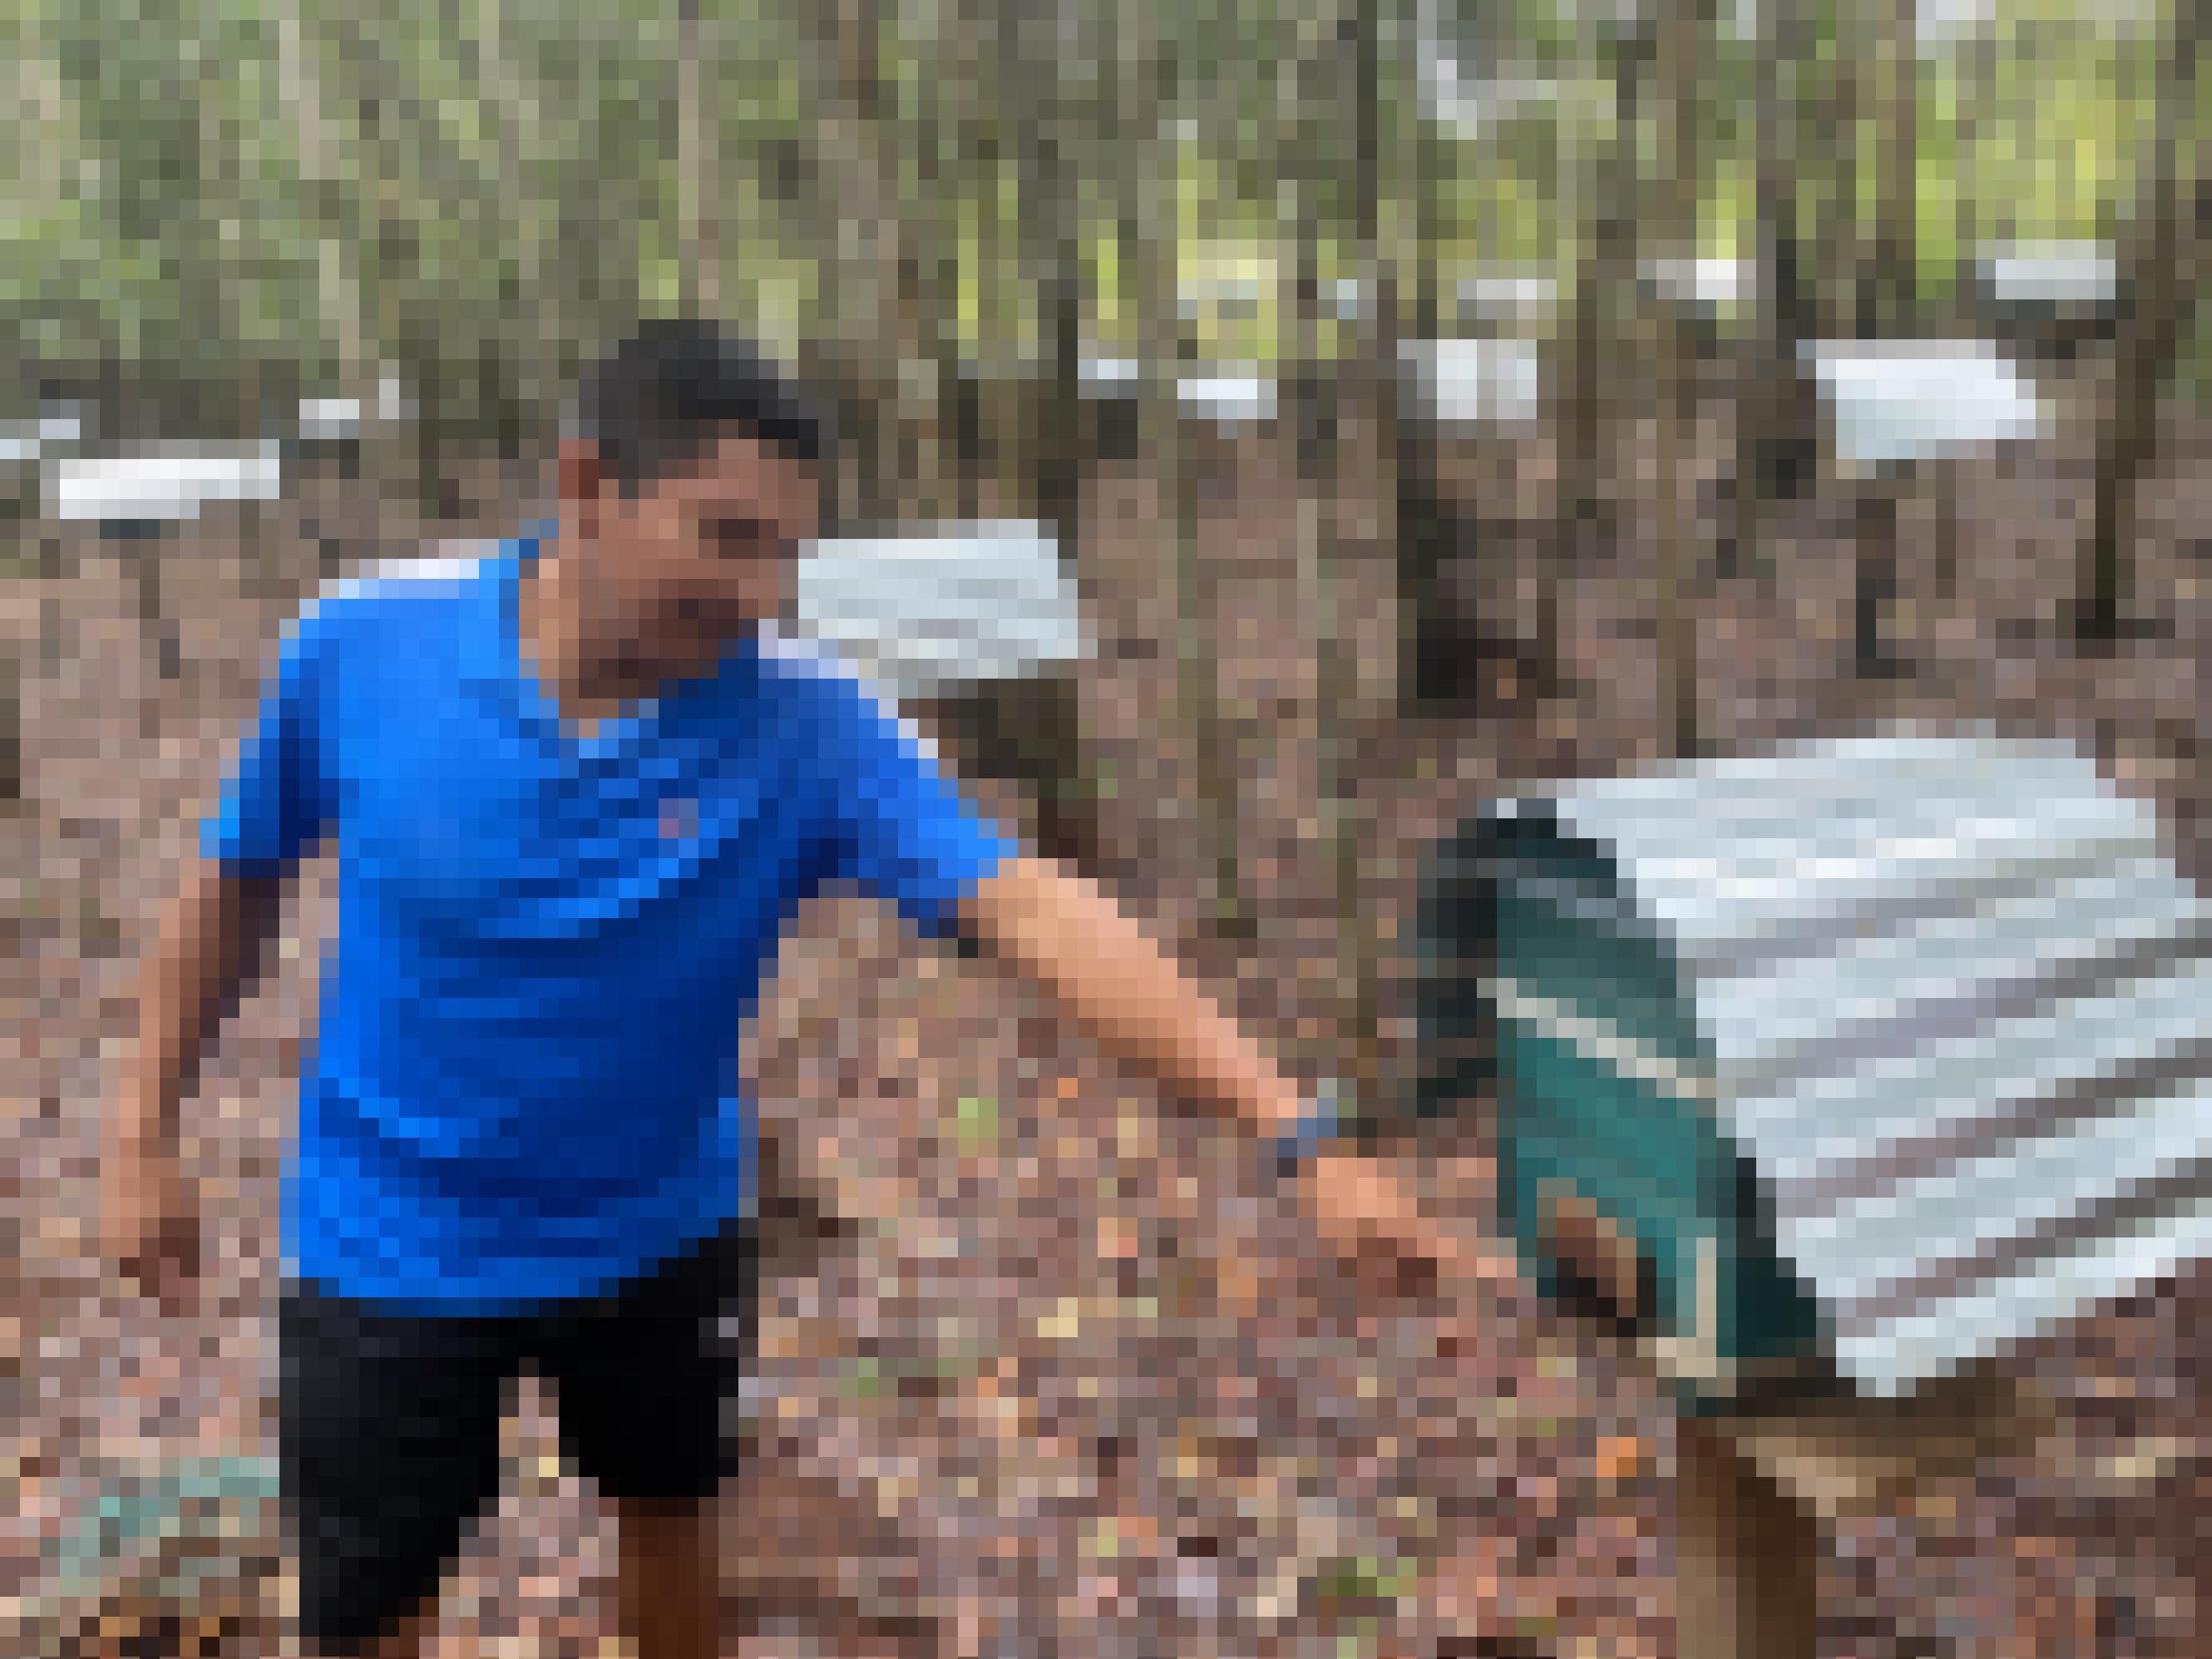 Fabio Pérez im blauen Shirt steht umgeben von Briefkasten-ähnlichen Bienenstöcken im Urwald.